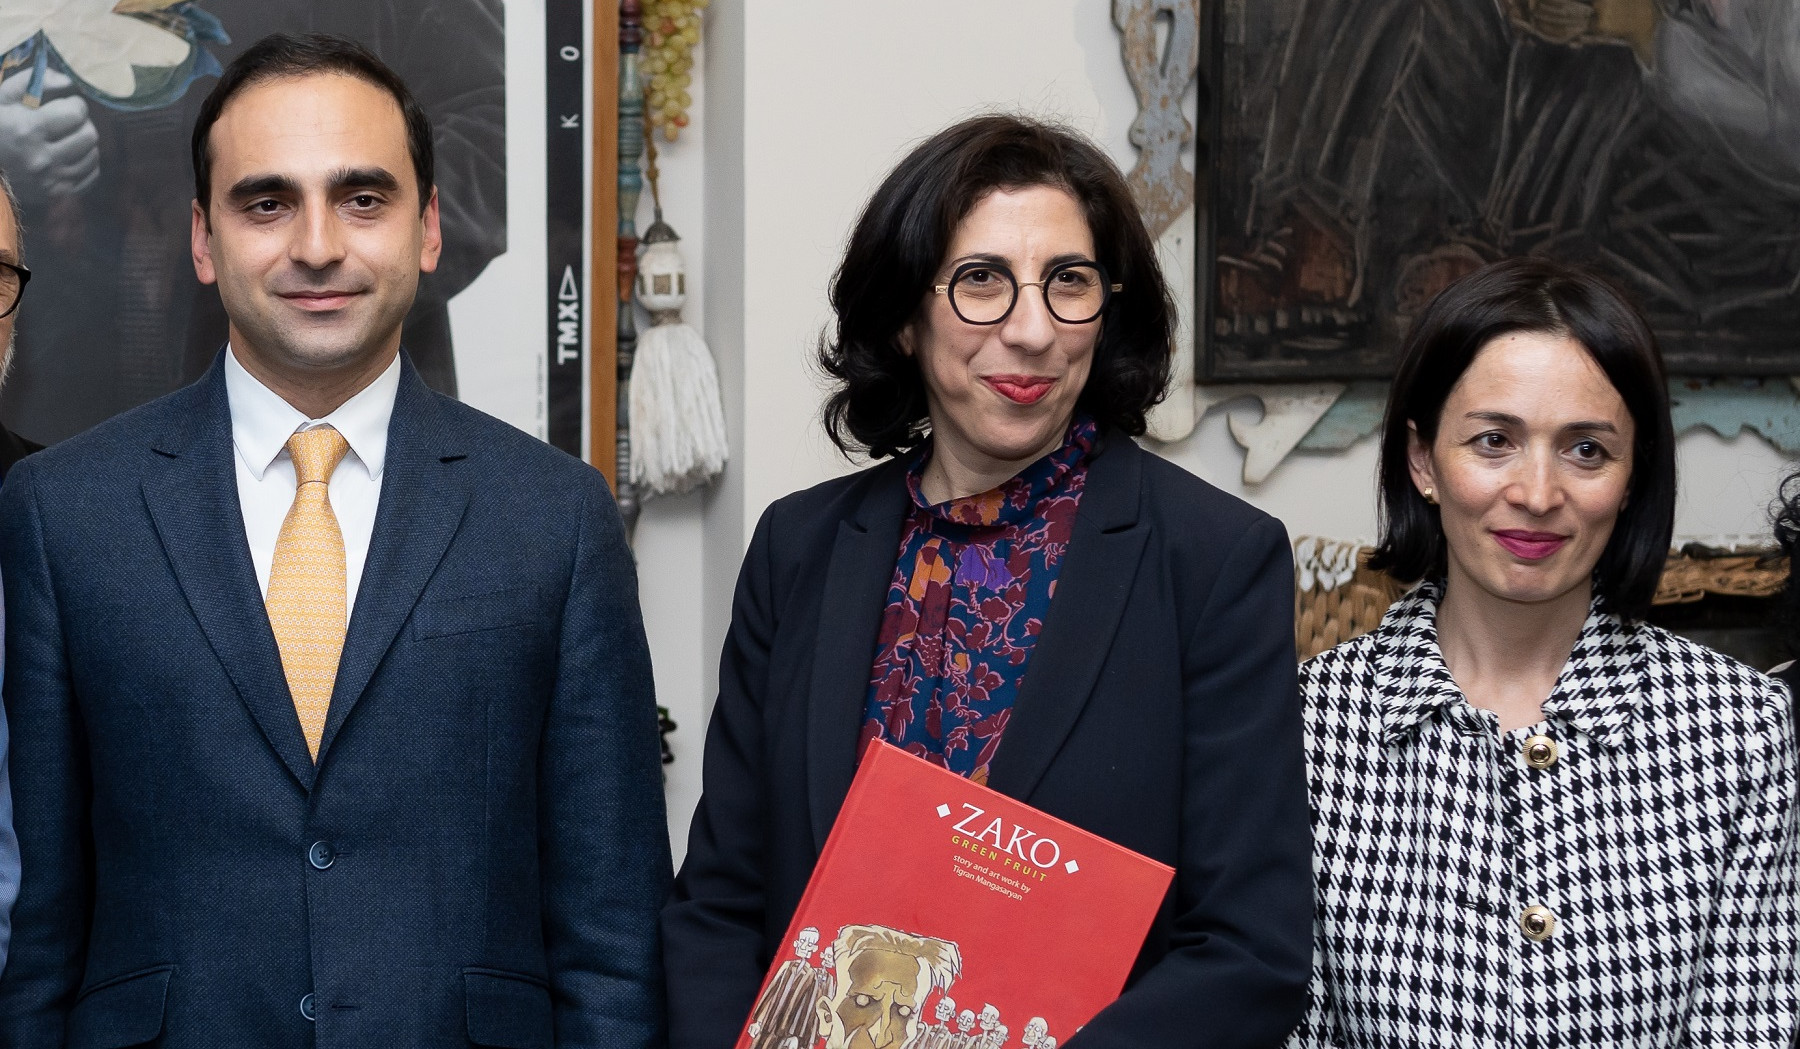 Ֆրանսիայի  պատվիրակությունը Փարաջանովի թանգարանում ներկա է եղել  Zako անիմացիոն նախագծի շնորհանդեսին